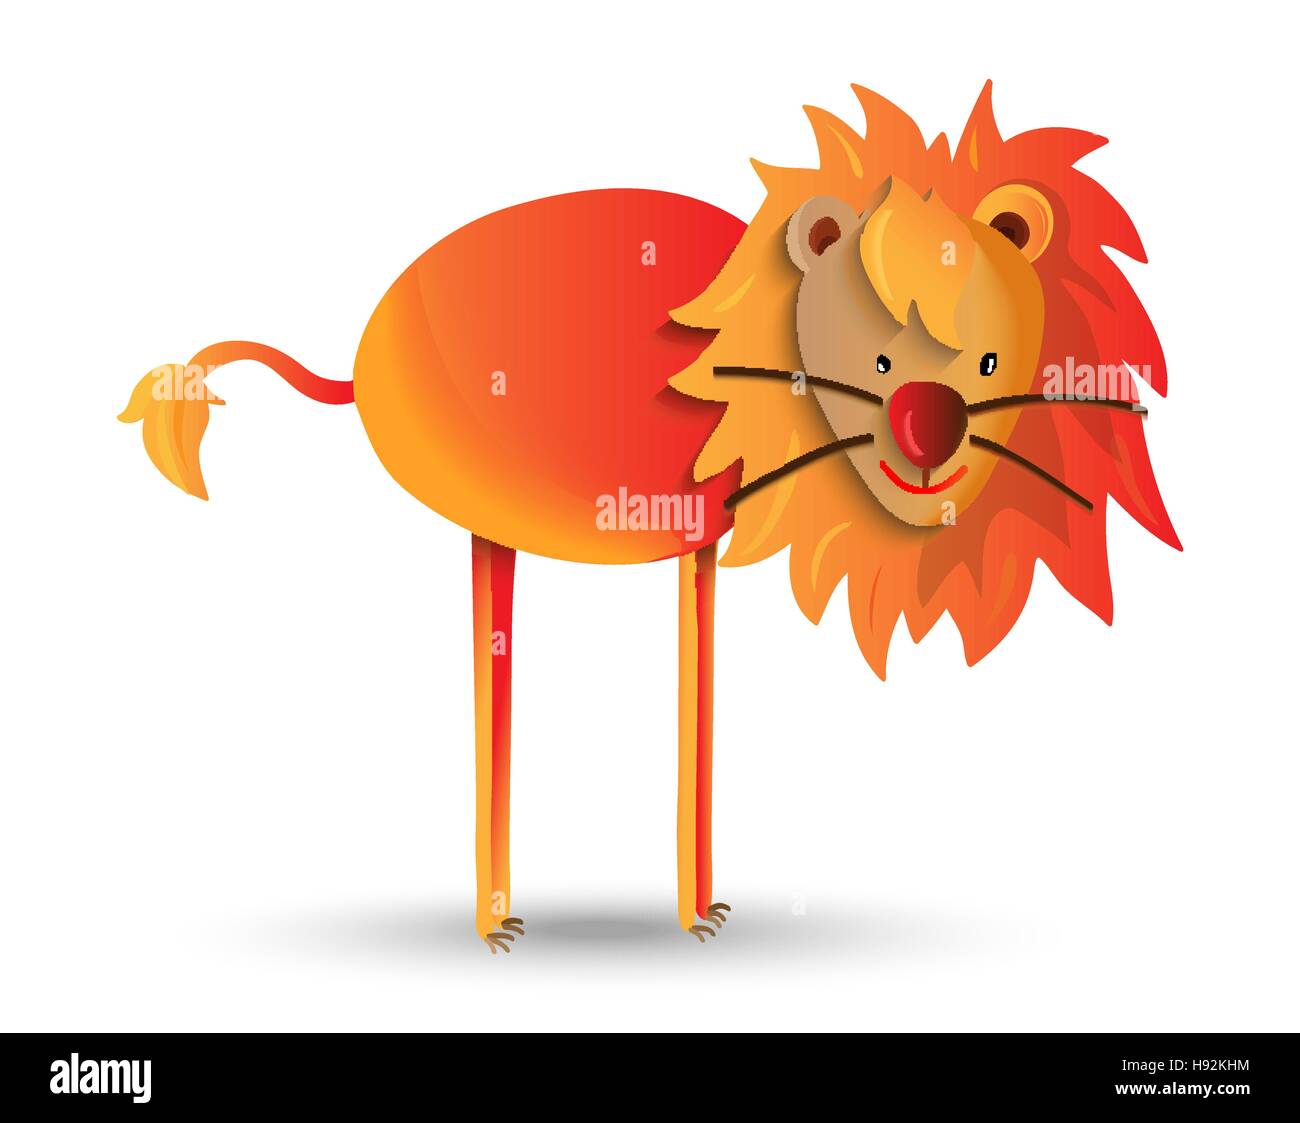 Wild Animal Cute cartoon illustration, happy jungle lion à crinière. Idéal pour les enfants ou l'éducation. Vecteur EPS10. Illustration de Vecteur